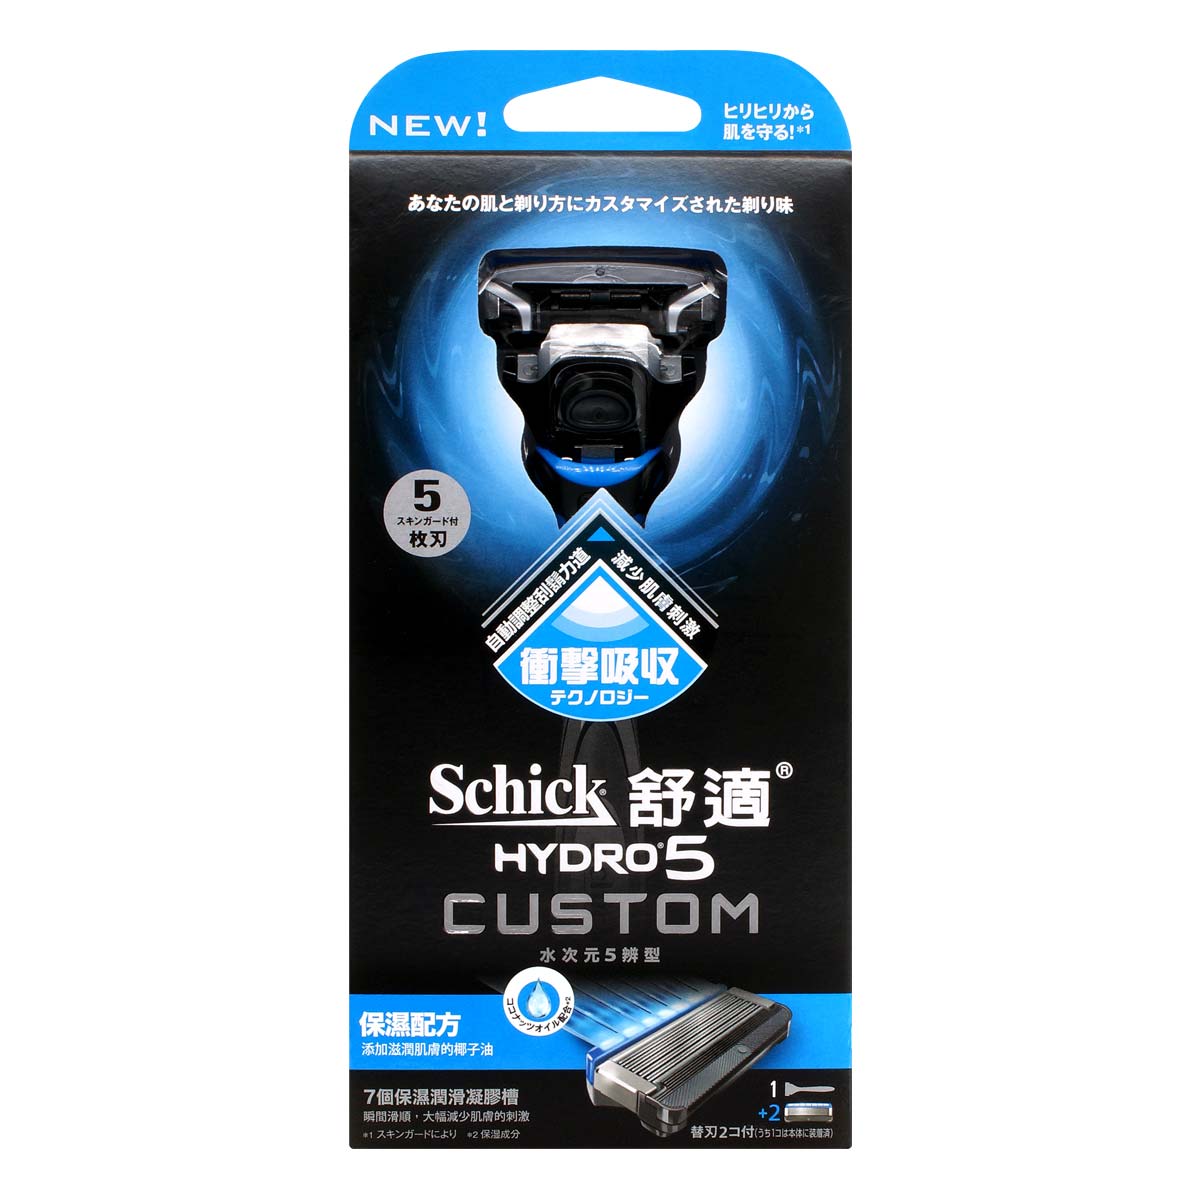 Schick 舒適 Hydro5 Custom 5 辨型剃鬚刀 - 保濕 -p_2